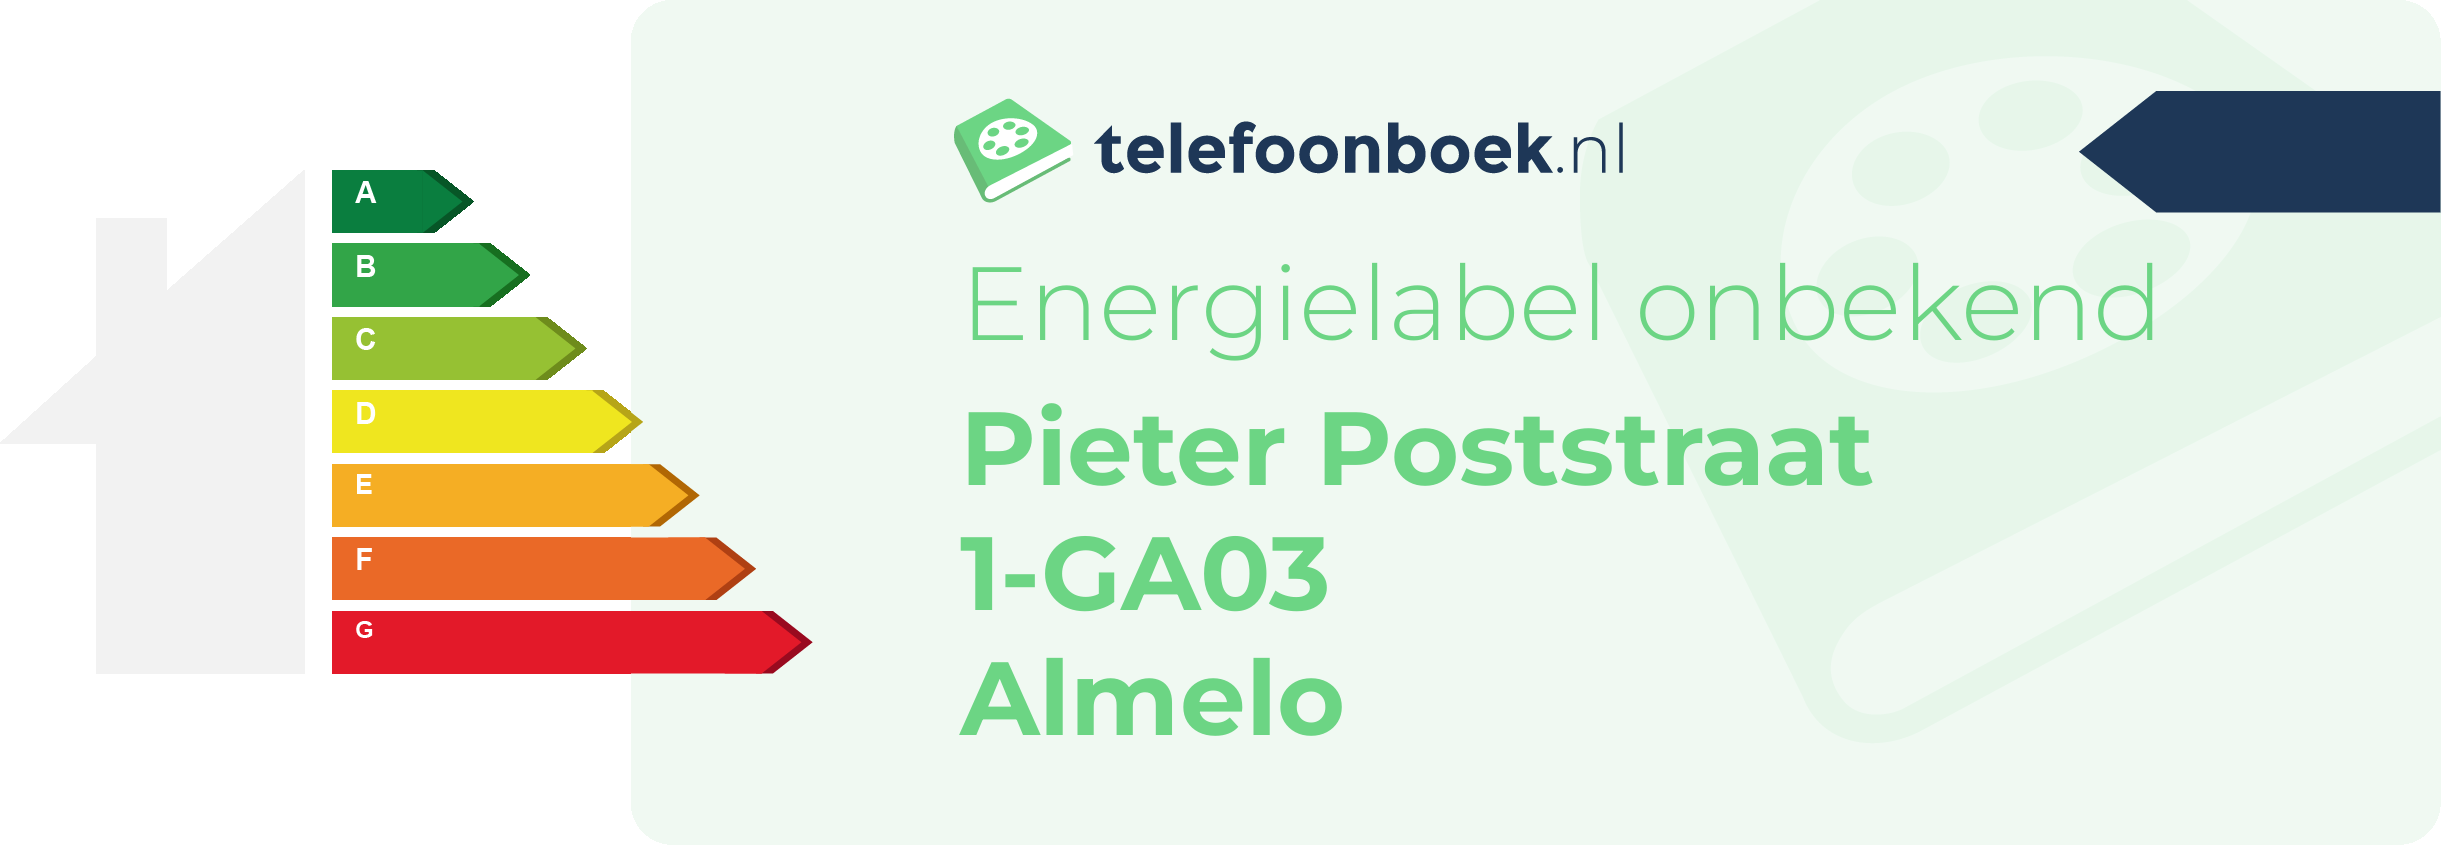 Energielabel Pieter Poststraat 1-GA03 Almelo